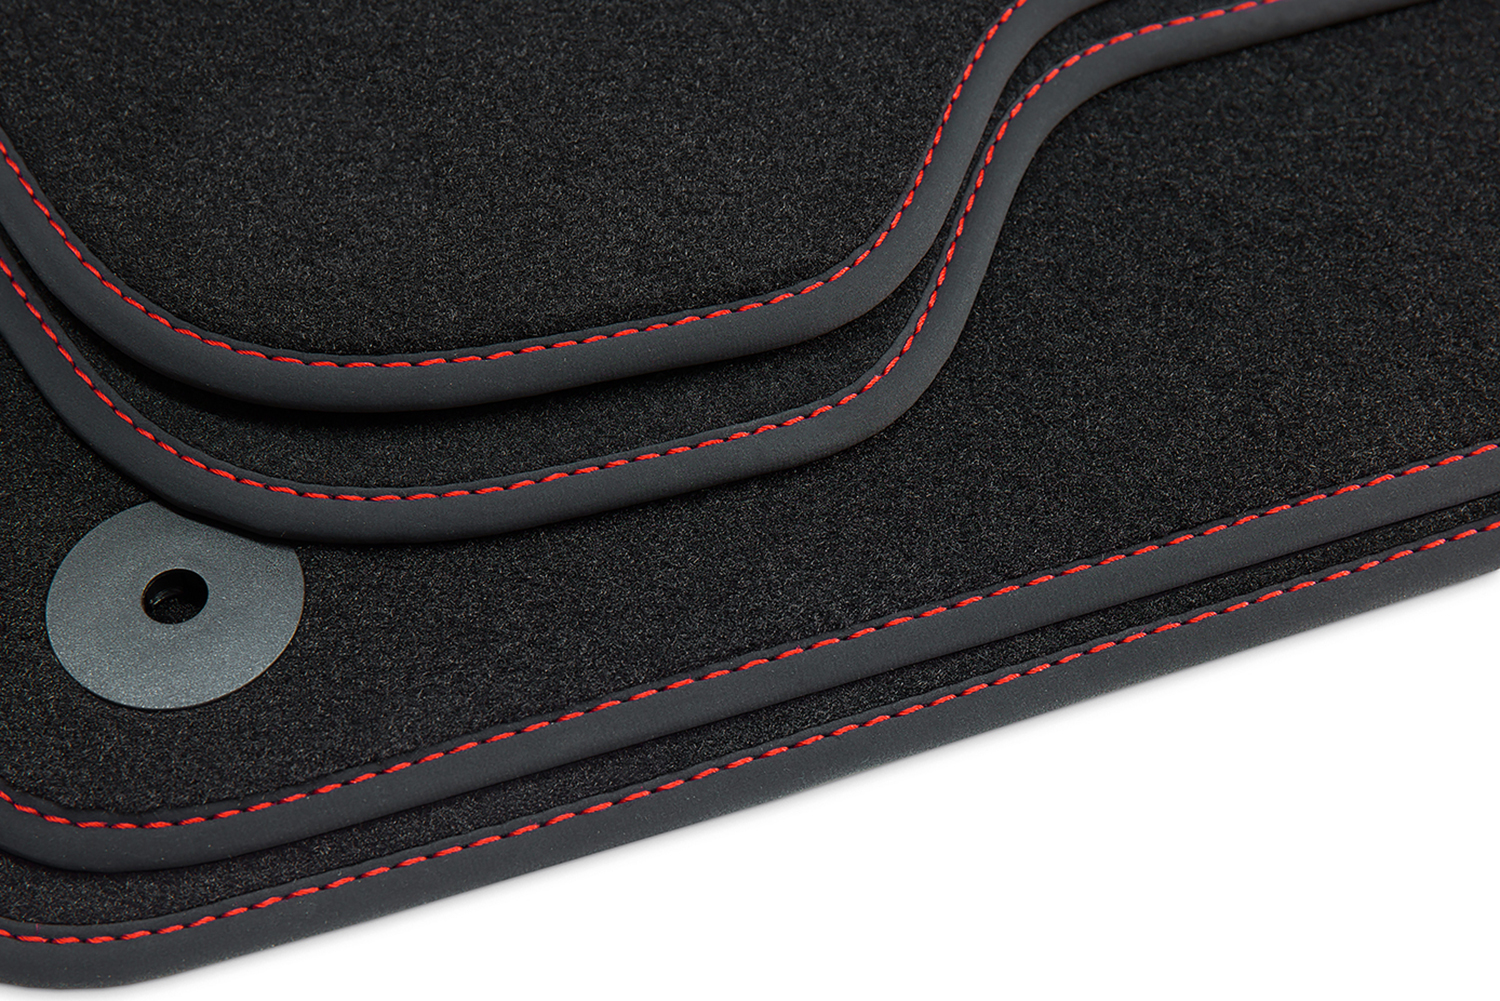 Cupra Ateca Premium Textilfußmatten 4 tlg. Fußmatten Satz Seat Schwarz  Carbon Leder